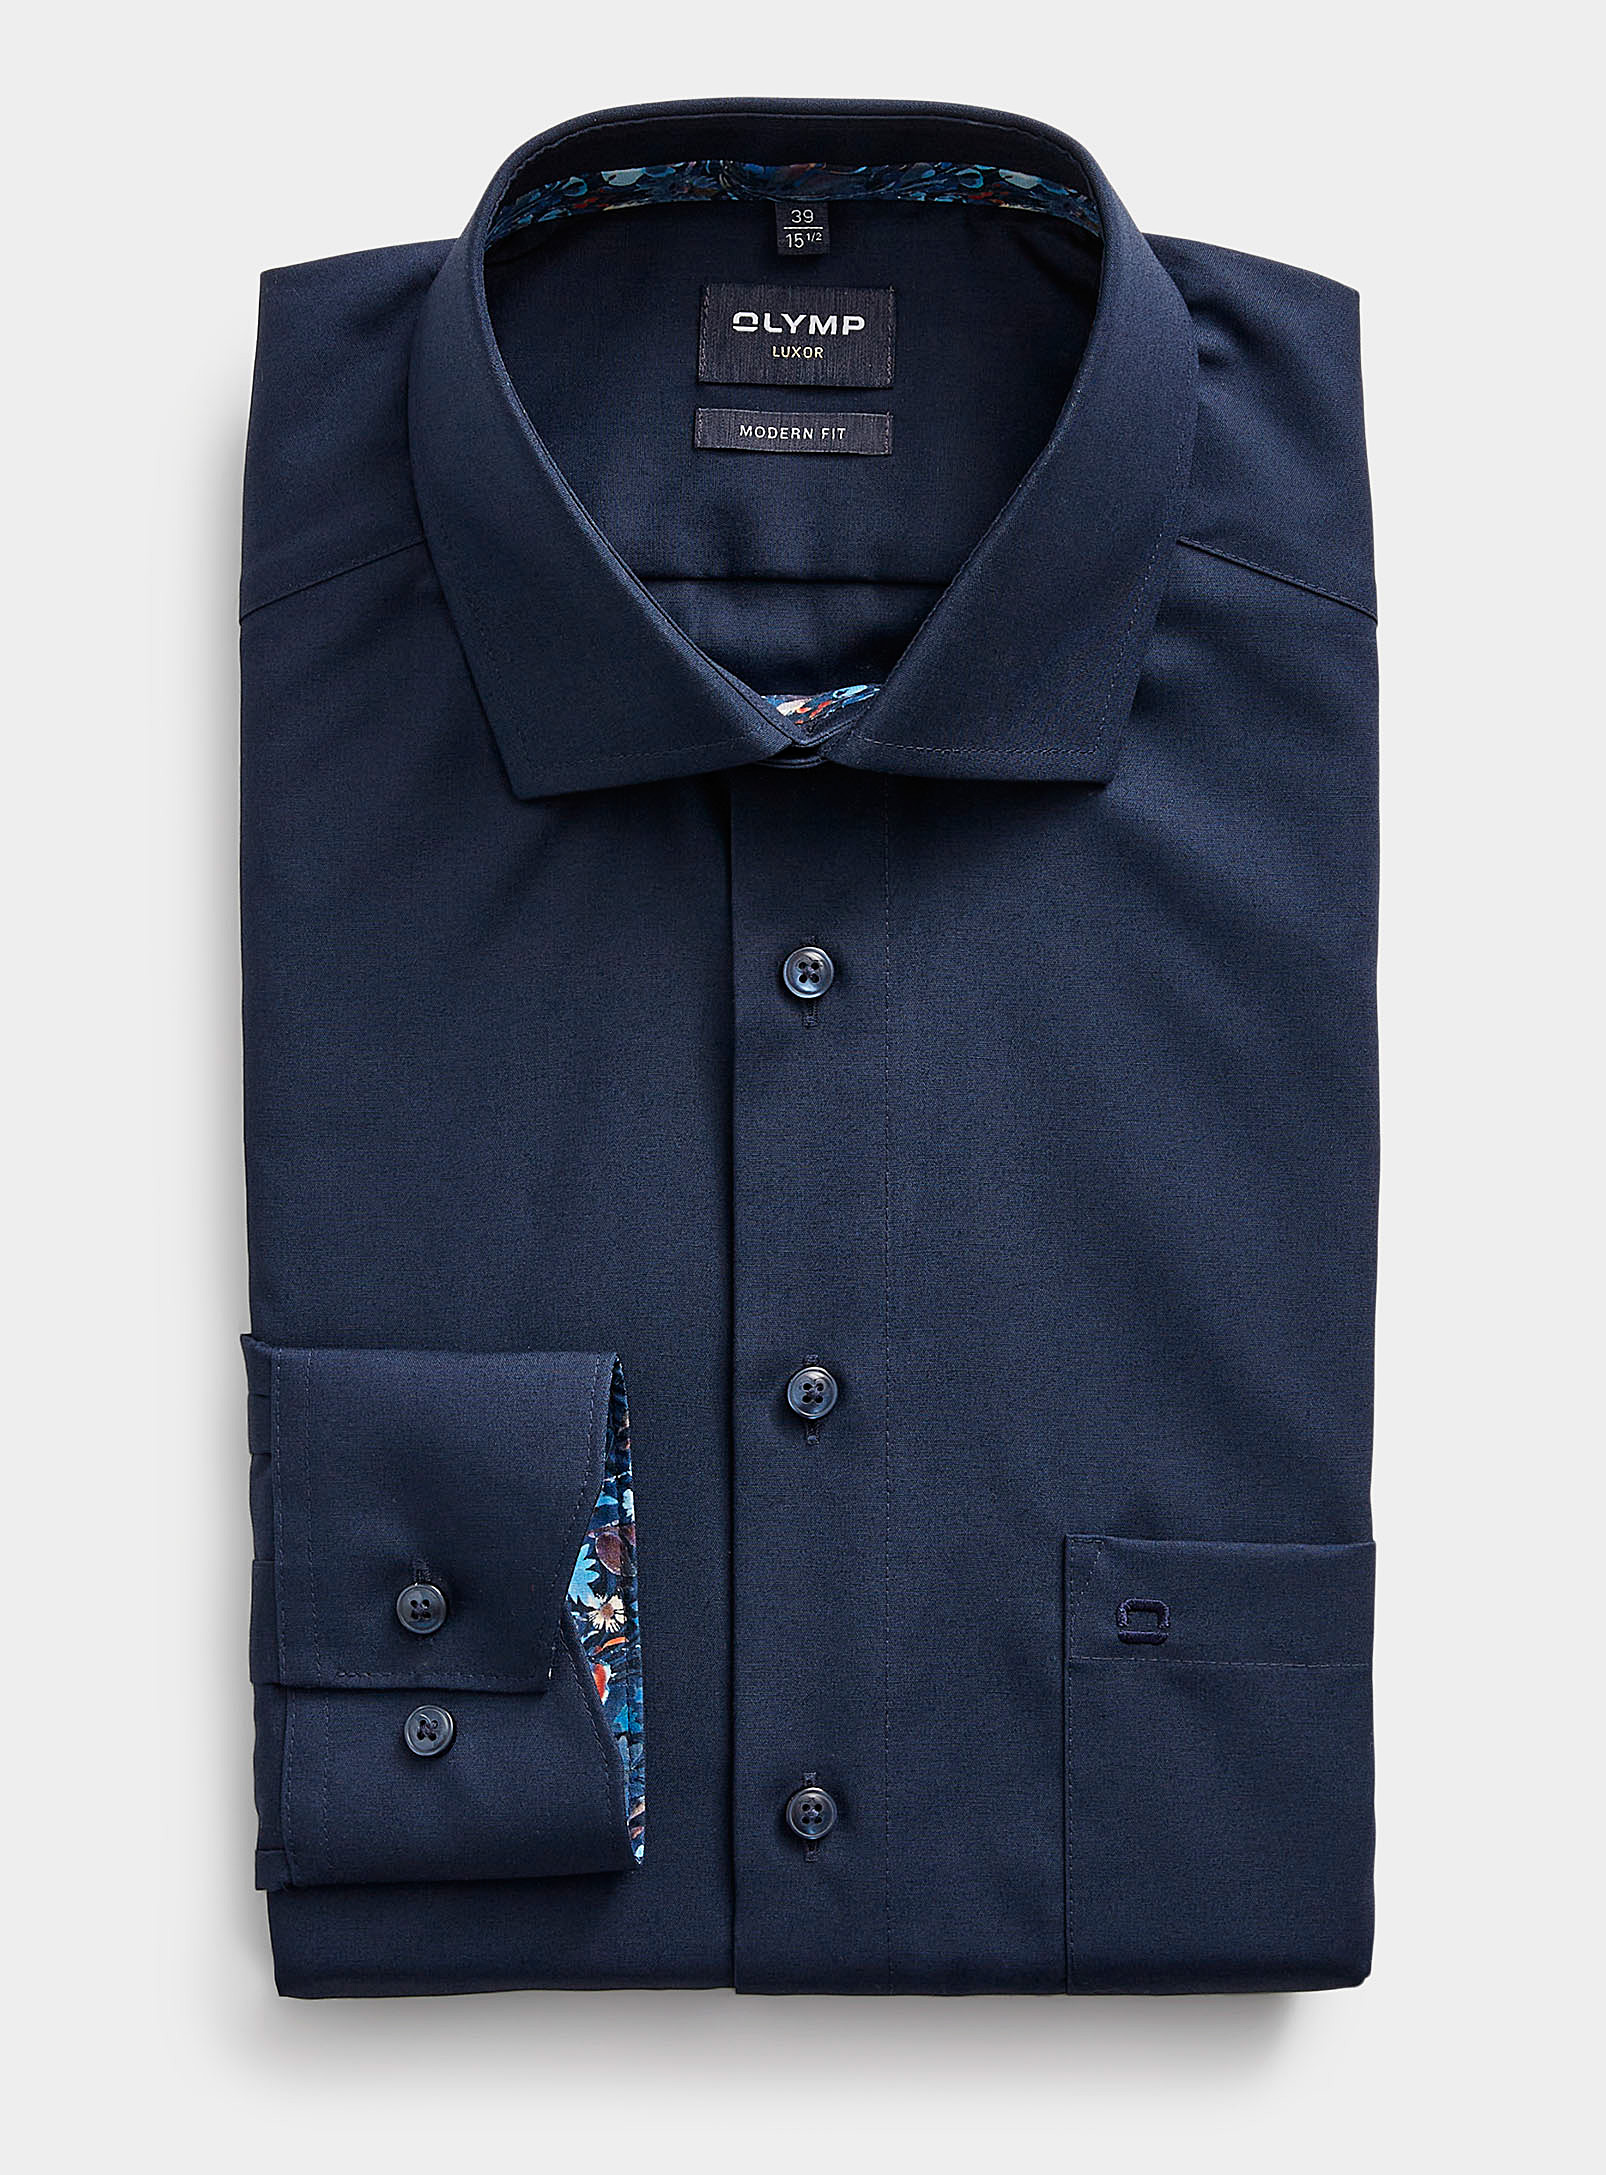 Olymp - La chemise marine pur coton Coupe confort